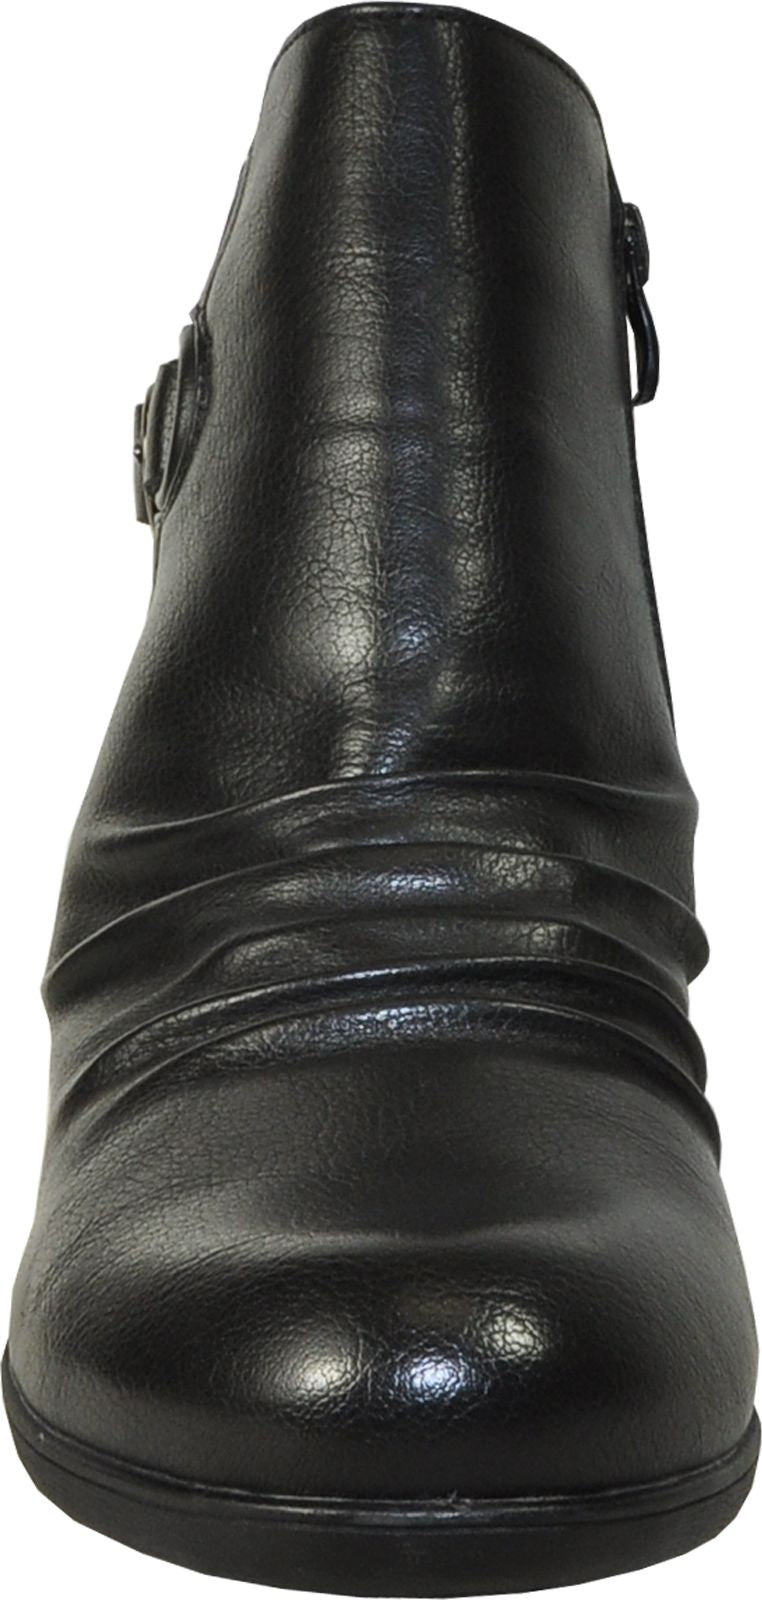 Vangelo Boots Hf9429 Black